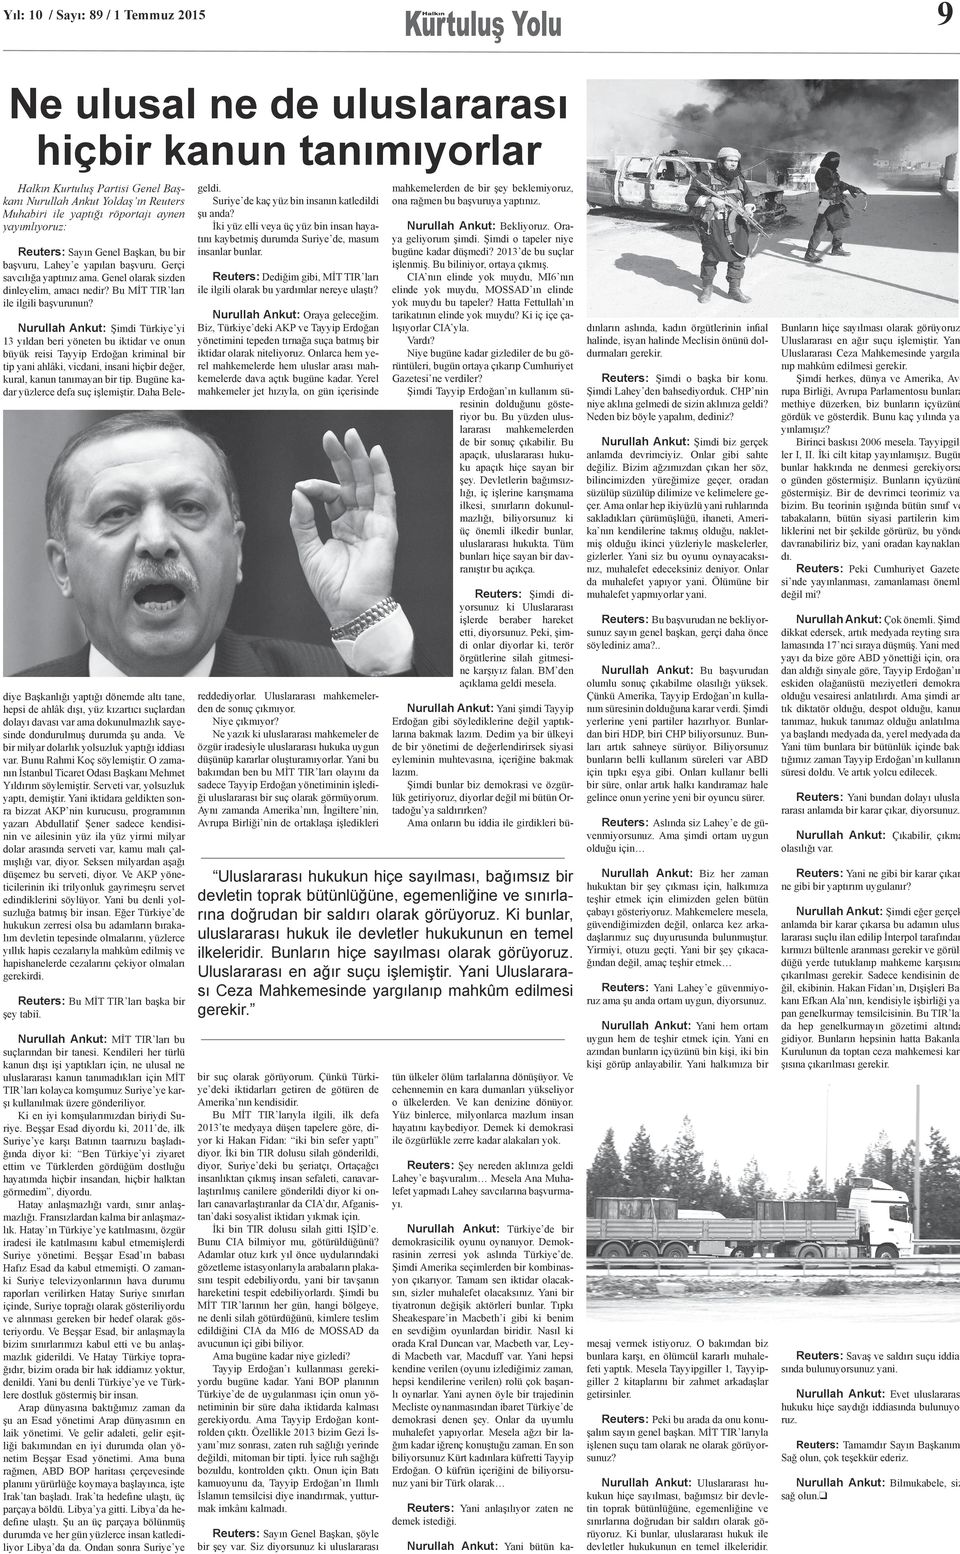 Nurullah Ankut: Şimdi Türkiye yi 13 yıldan beri yöneten bu iktidar ve onun büyük reisi Tayyip Erdoğan kriminal bir tip yani ahlâki, vicdani, insani hiçbir değer, kural, kanun tanımayan bir tip.